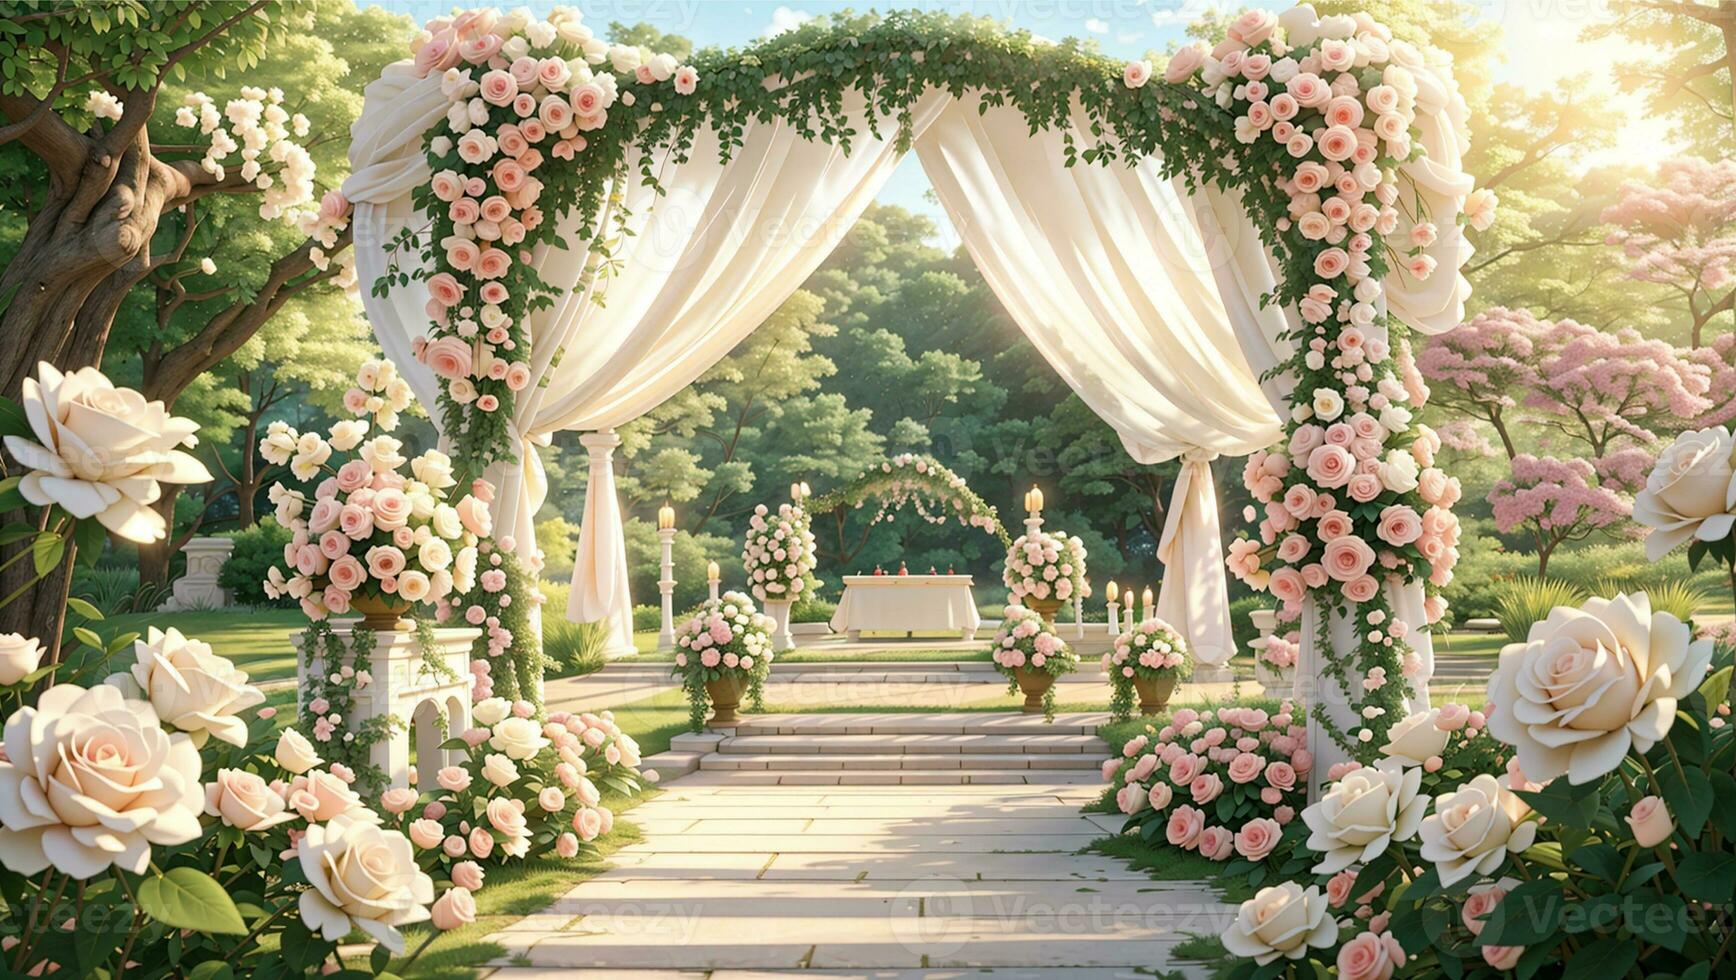 al aire libre jardín Boda lugar de eventos con floral decorado arco soportes foto